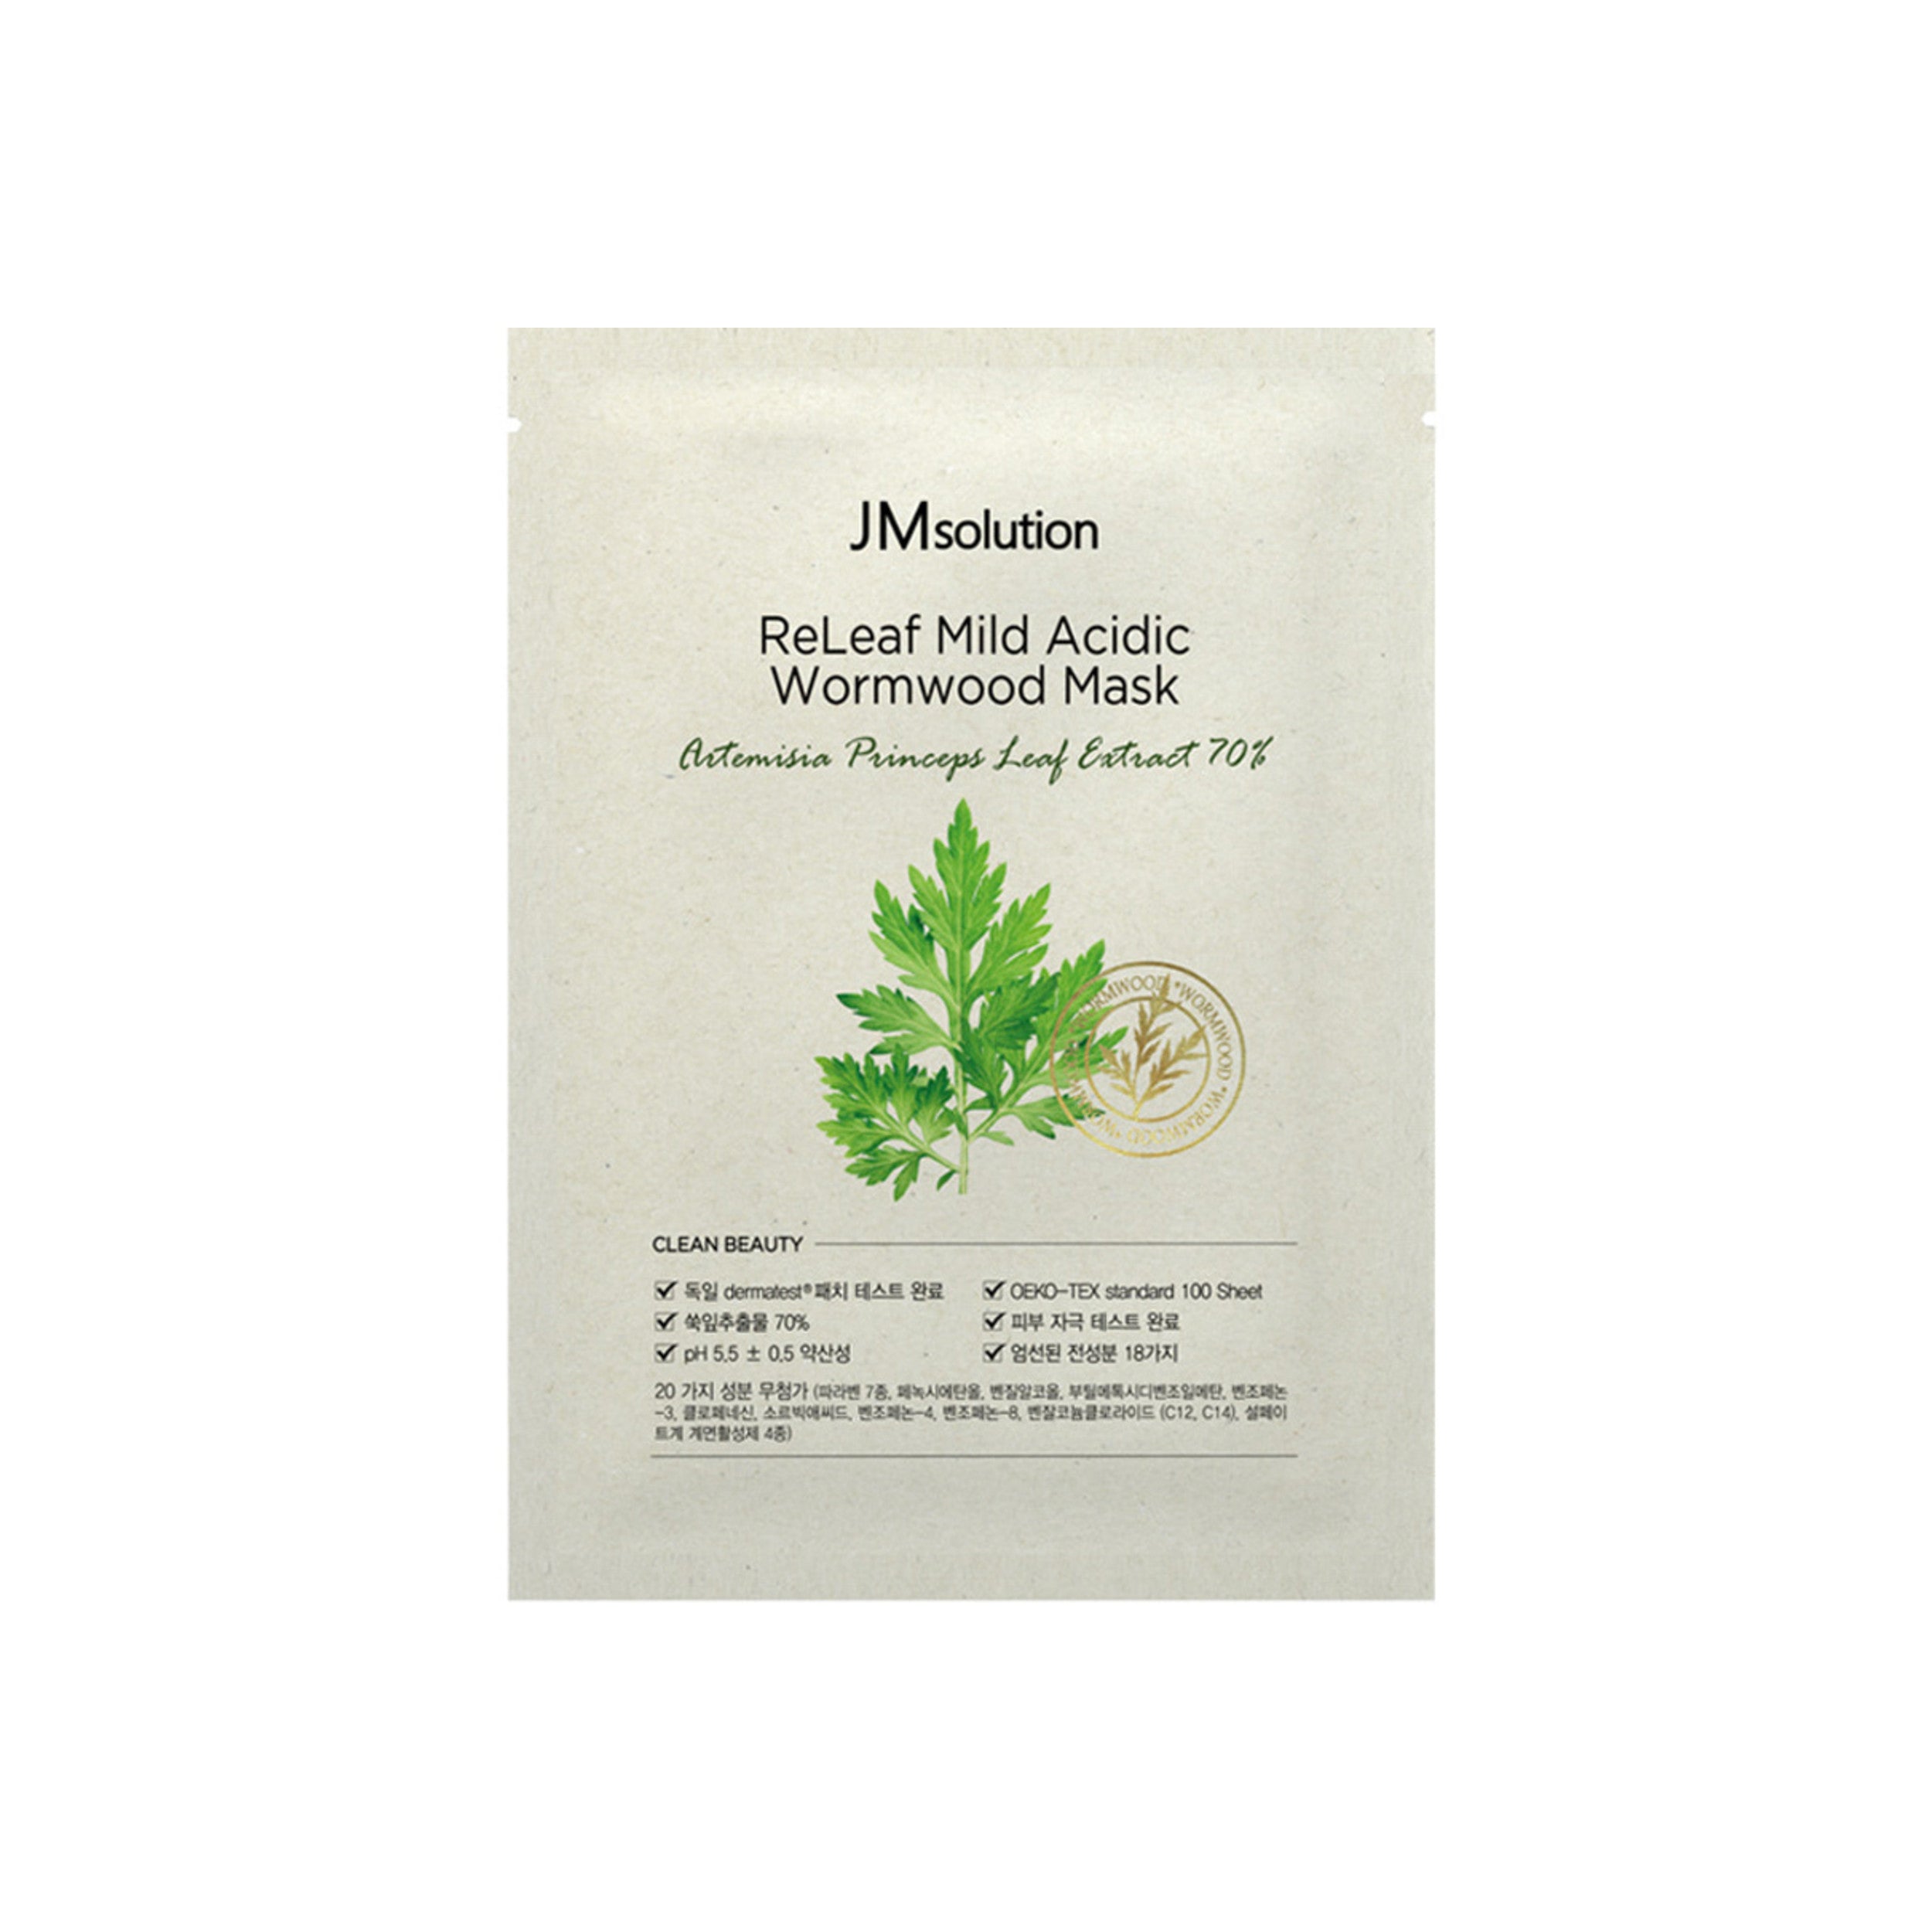 JM Solution Releaf Mild Acidic Worm Wood Mask Beauty JM Solution 1 Sheet  